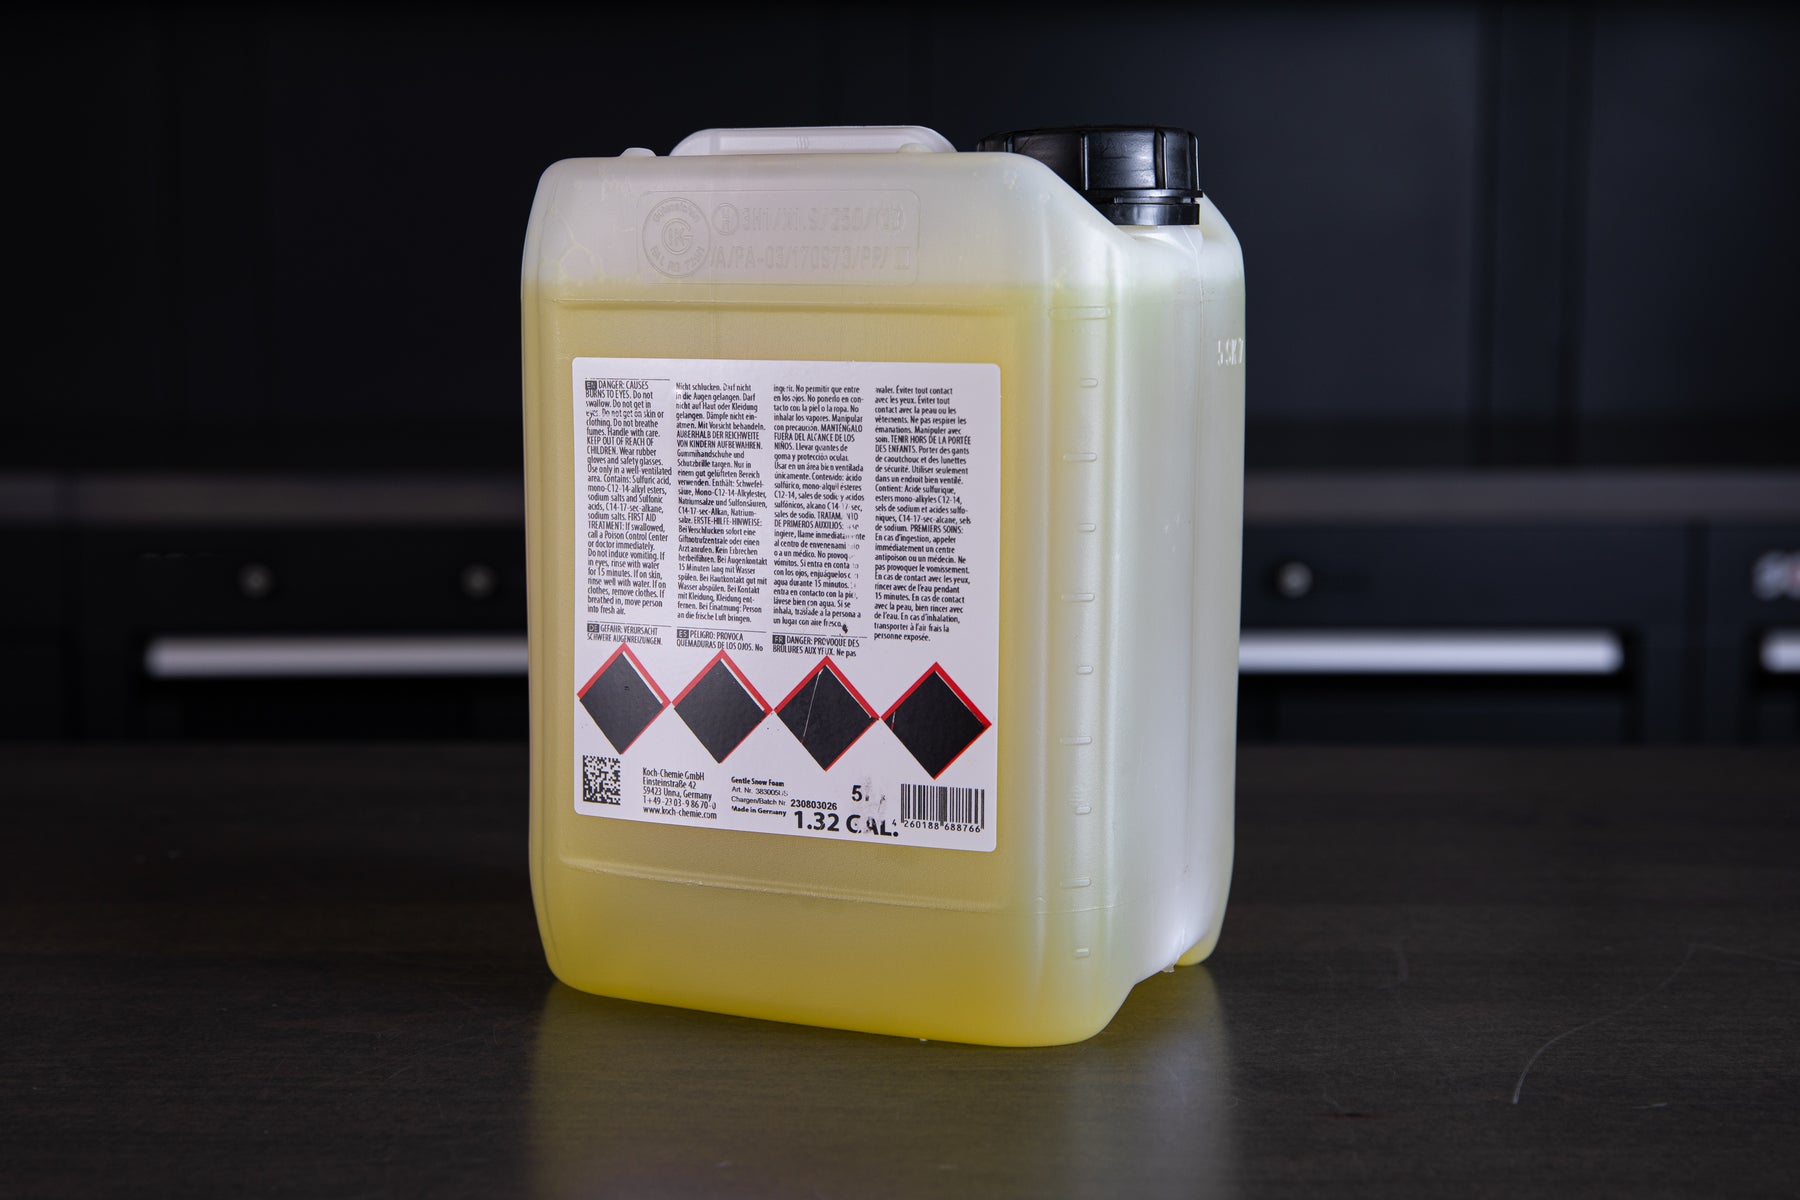 Koch Chemie Gentle Snow Foam 5 Liter | GSF Soap Shampoo 169oz